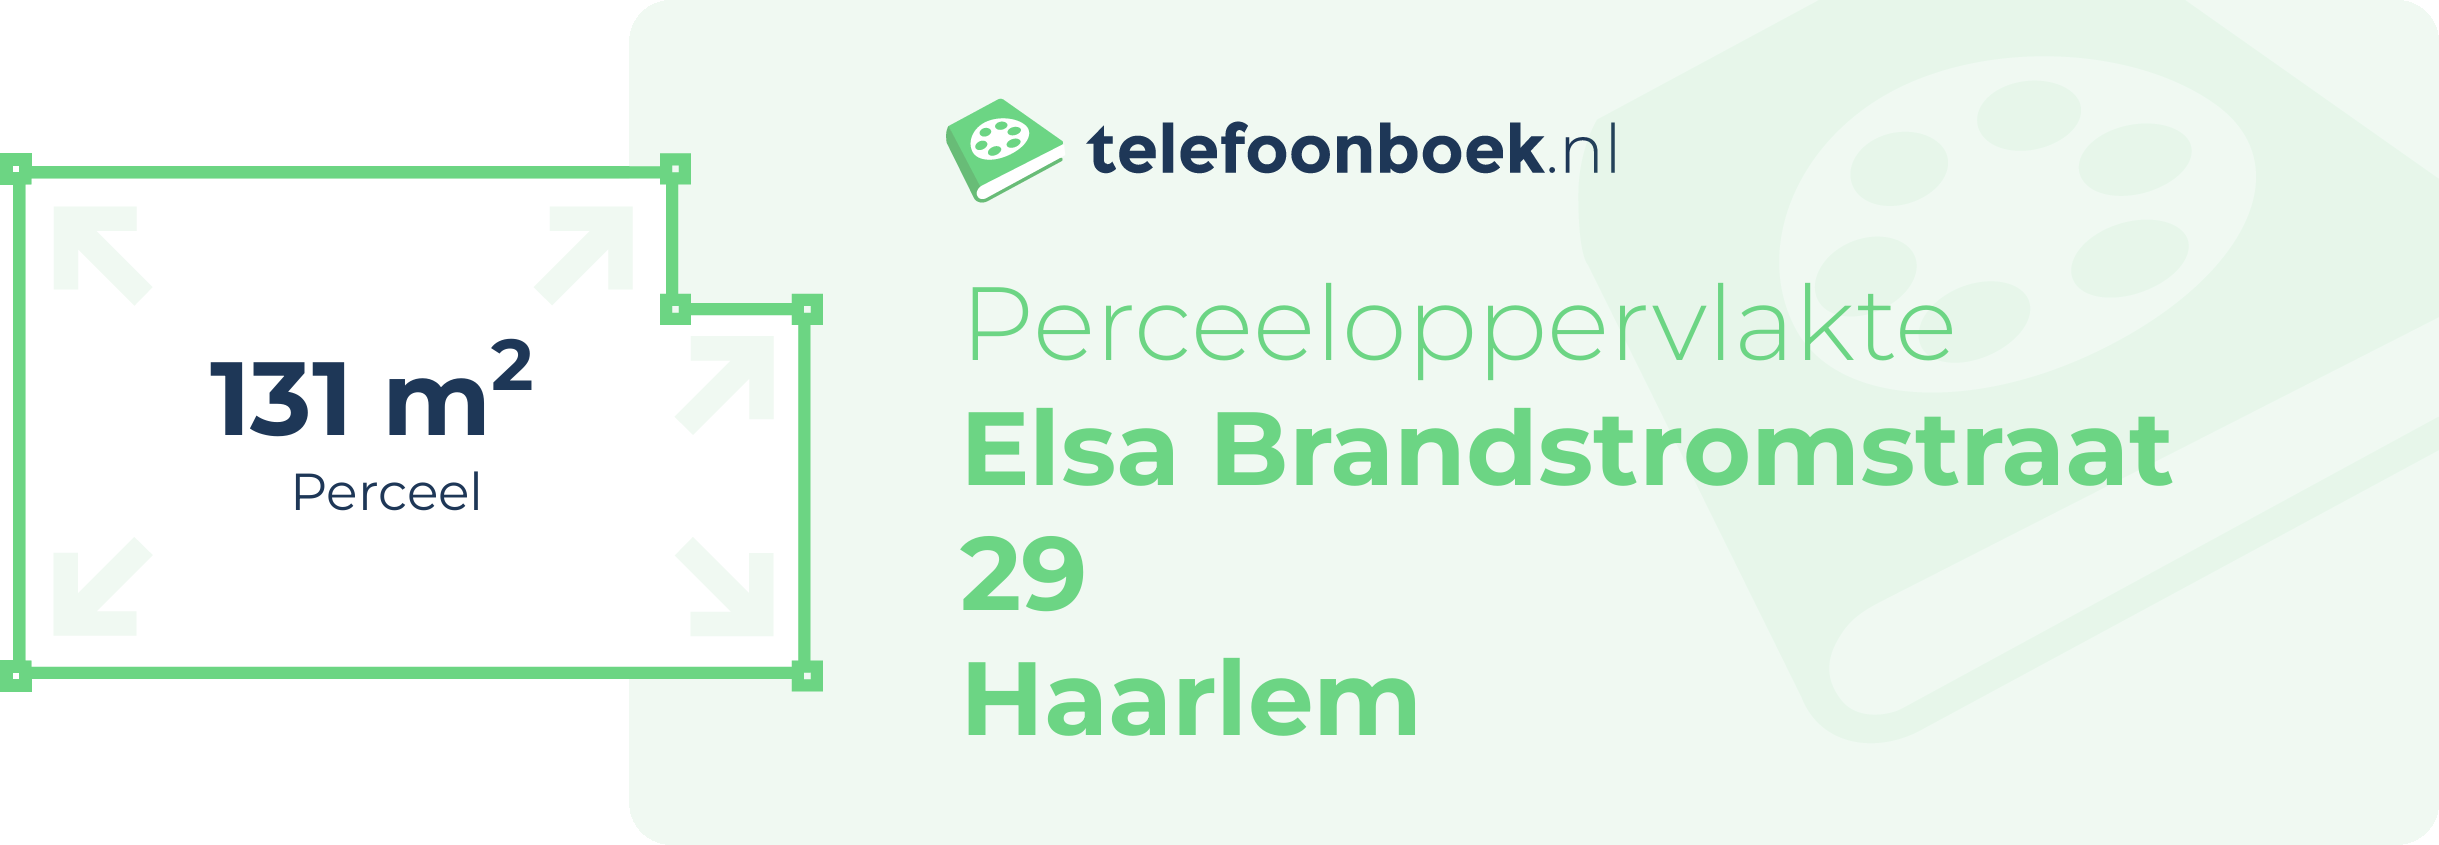 Perceeloppervlakte Elsa Brandstromstraat 29 Haarlem